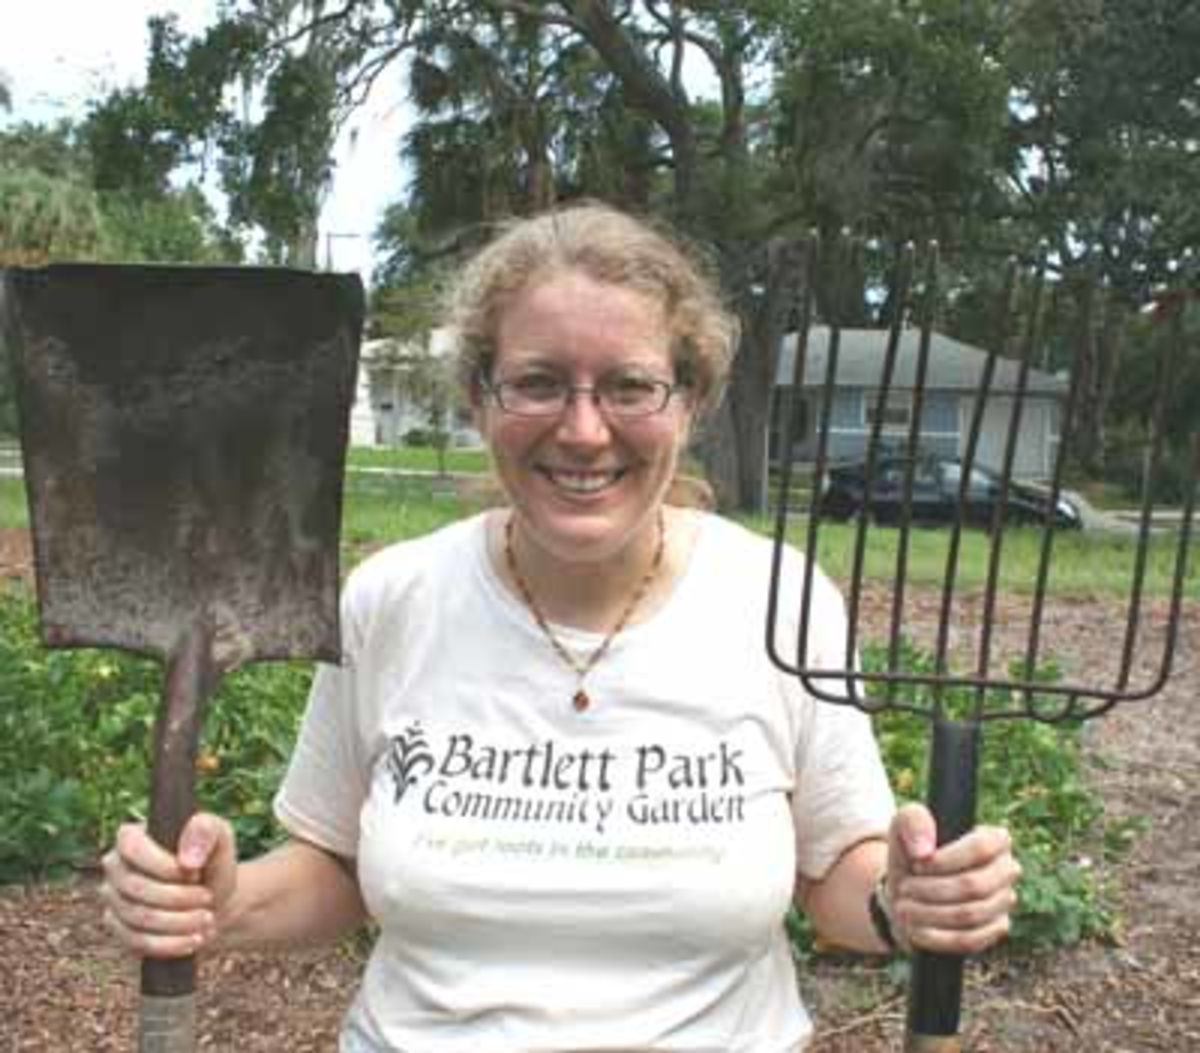 Andrea Hildebran of Bartlett Park Community Garden